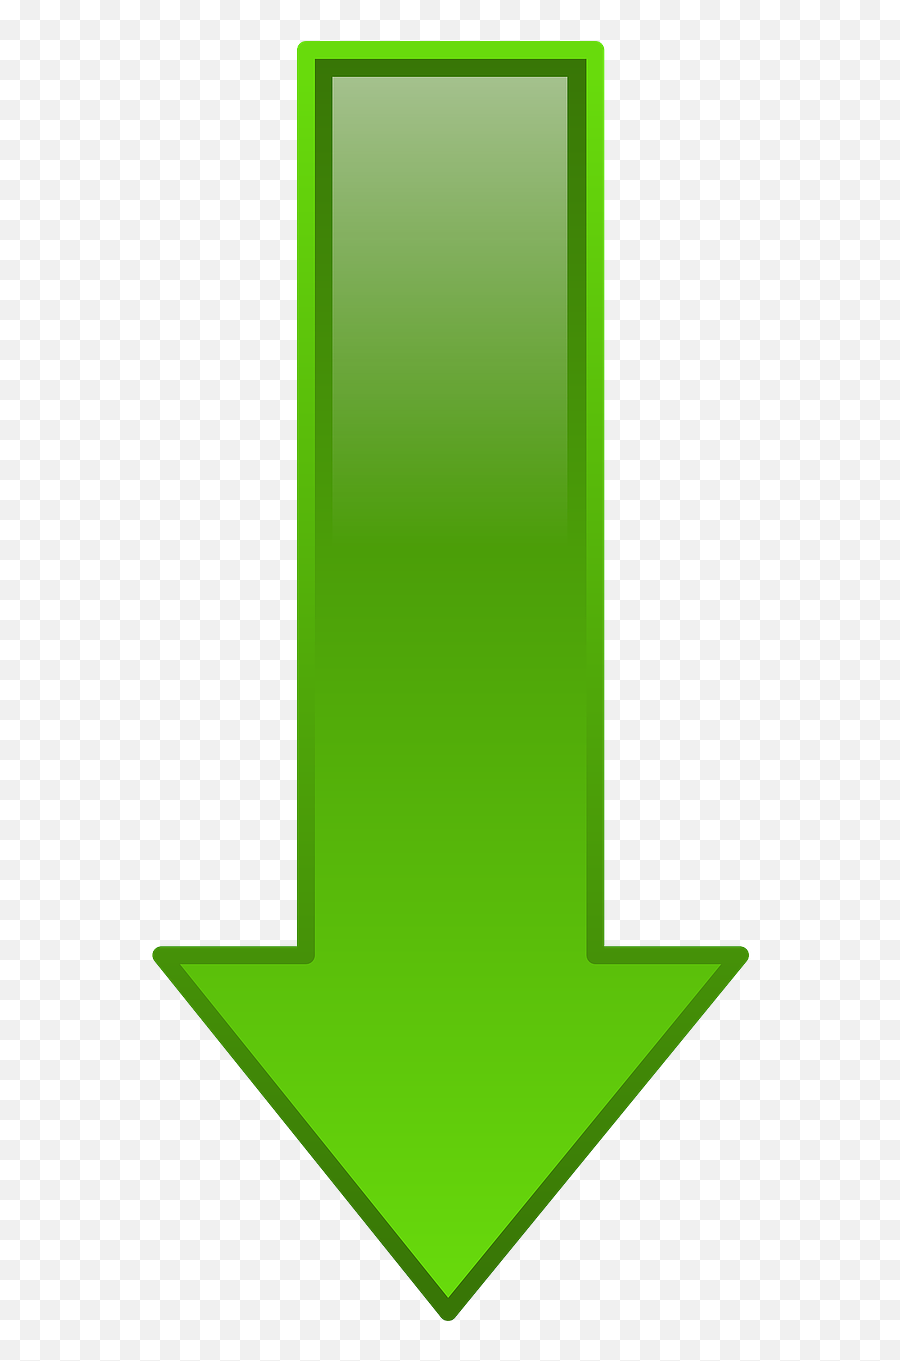 Down Arrow Green Downward Shape - Downward Green Arrow Sign Emoji,Cheese Emoticon